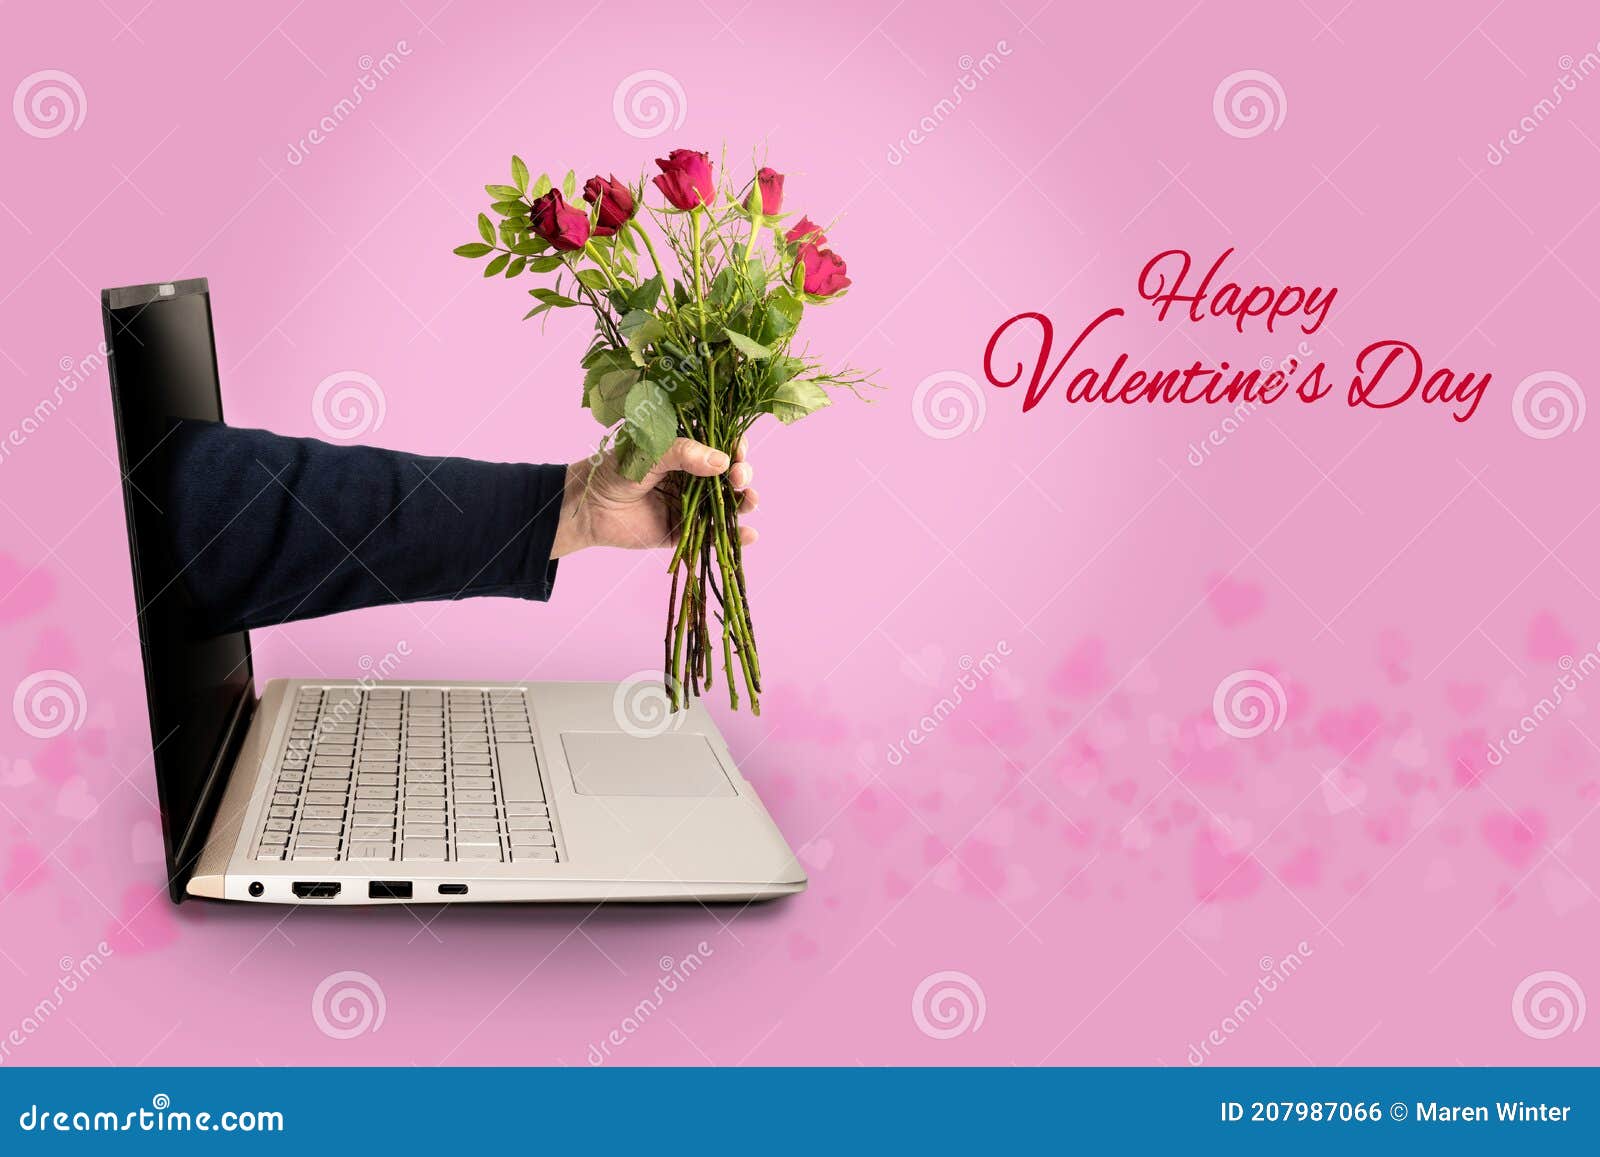 Bạn muốn tìm kiếm một hình ảnh đặc biệt để trang trí cho desktop hay đăng lên mạng xã hội trong ngày lễ tình nhân? Hãy tìm đến hình ảnh tay một người đàn ông cầm bó hoa hồng từ laptop. Đây là một hình ảnh cực kì lãng mạn và ý nghĩa, thể hiện tình yêu thật sự của cặp đôi. Hãy ngắm nhìn và cảm nhận sự ngọt ngào của tình yêu!